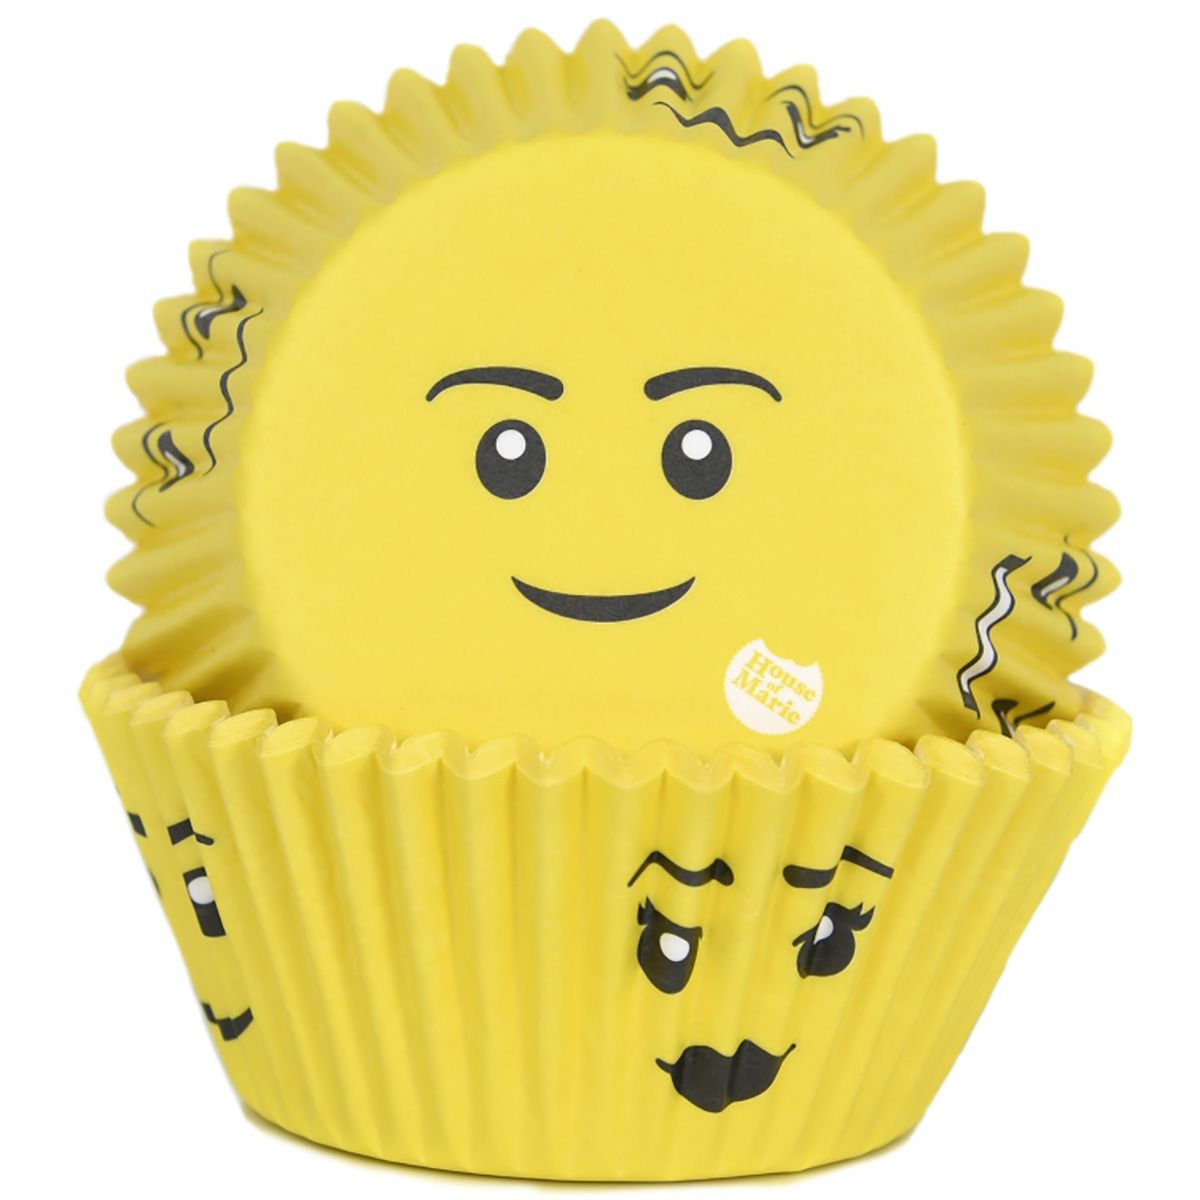 Muffinförmchen Smile gelb